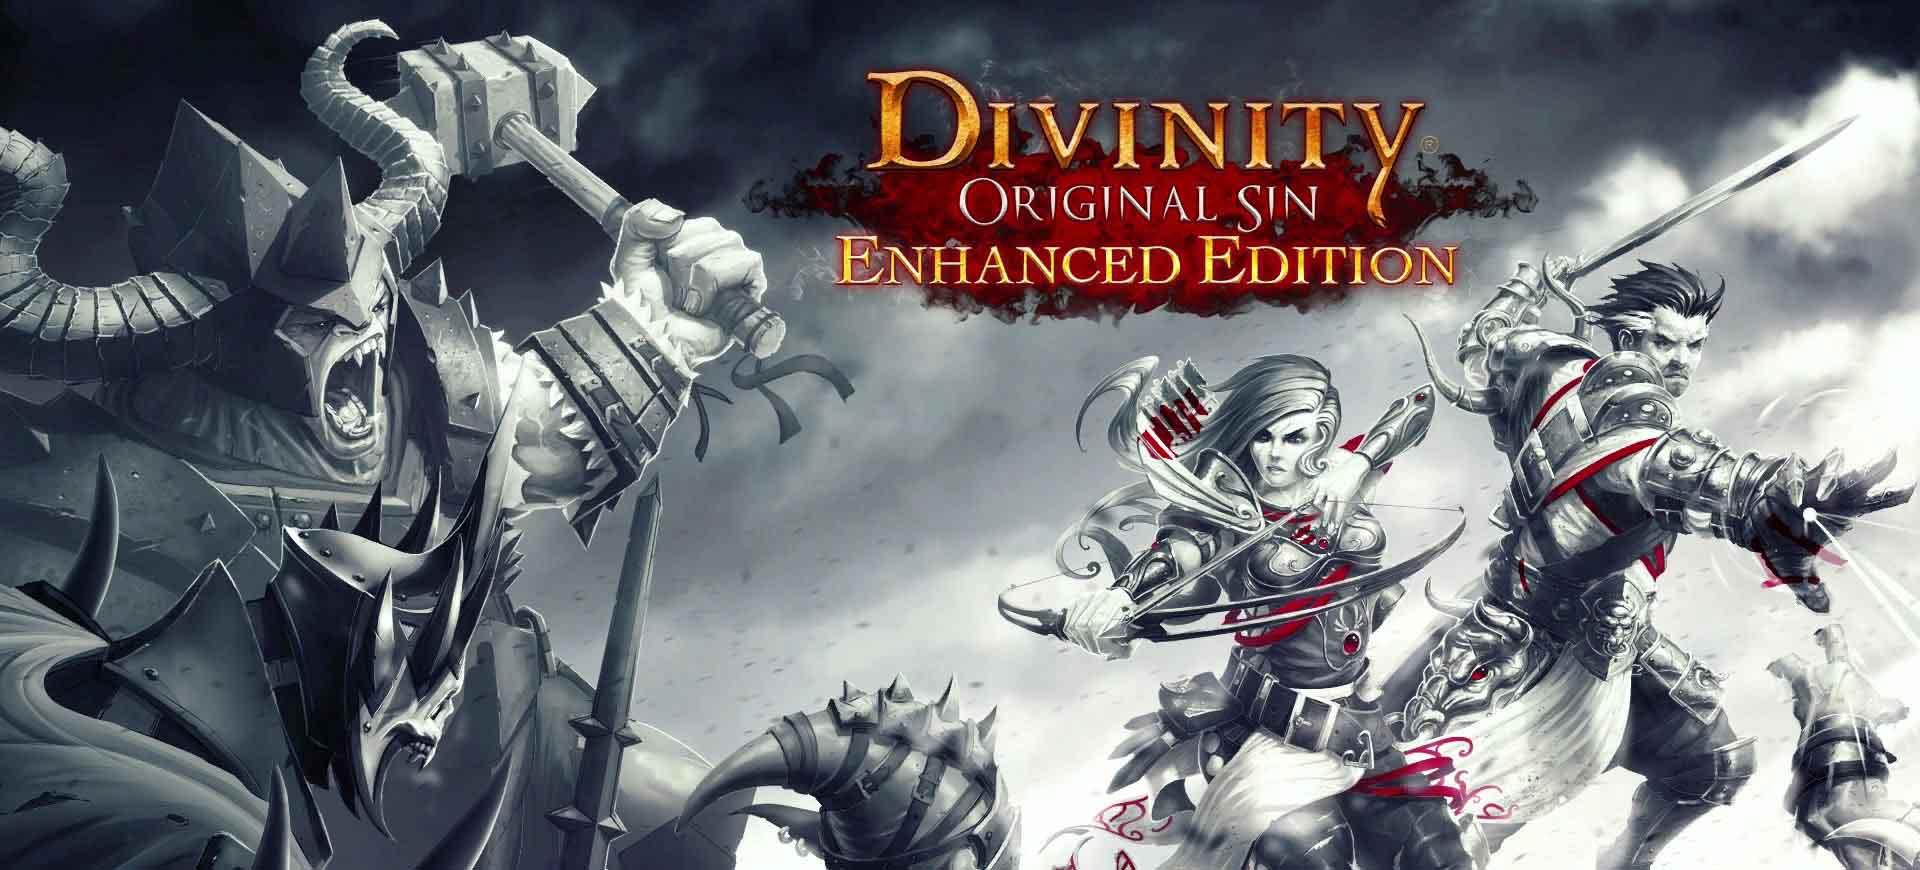 Divinity: Original Sin - Enhanced Edition bổ sung tính năng thực tế ảo